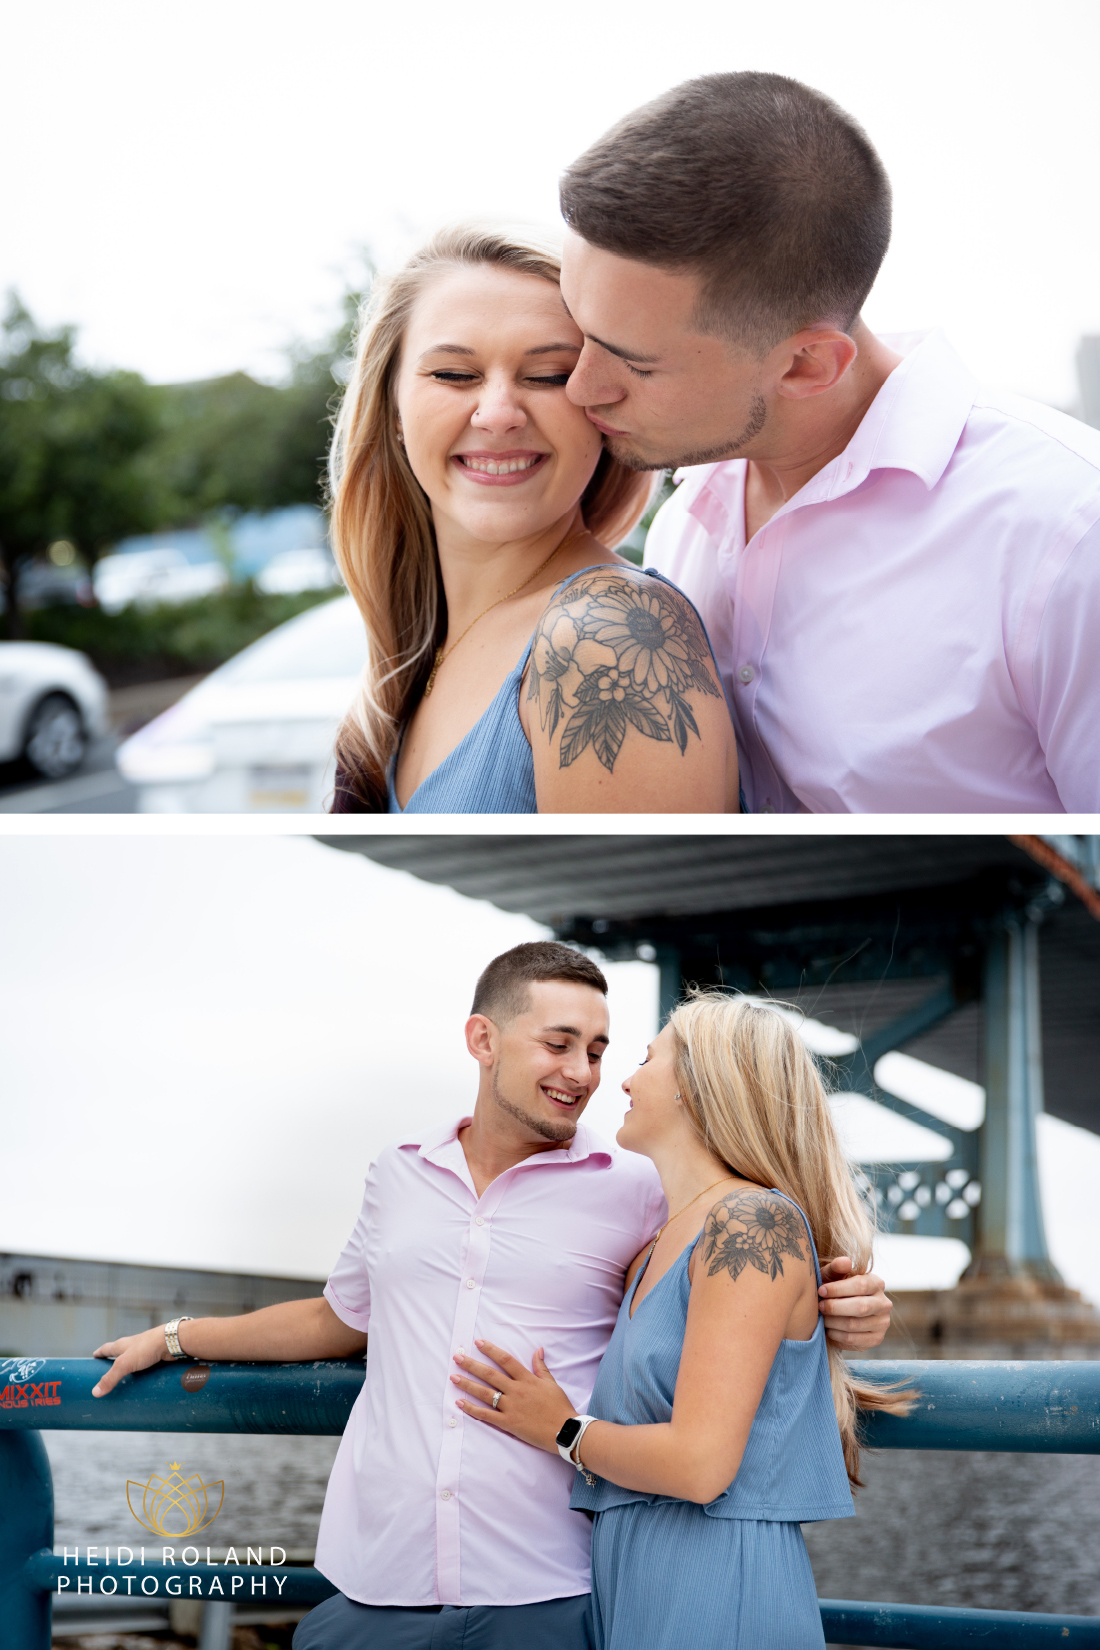 Man kissing woman's cheek after Philadelphia Proposal